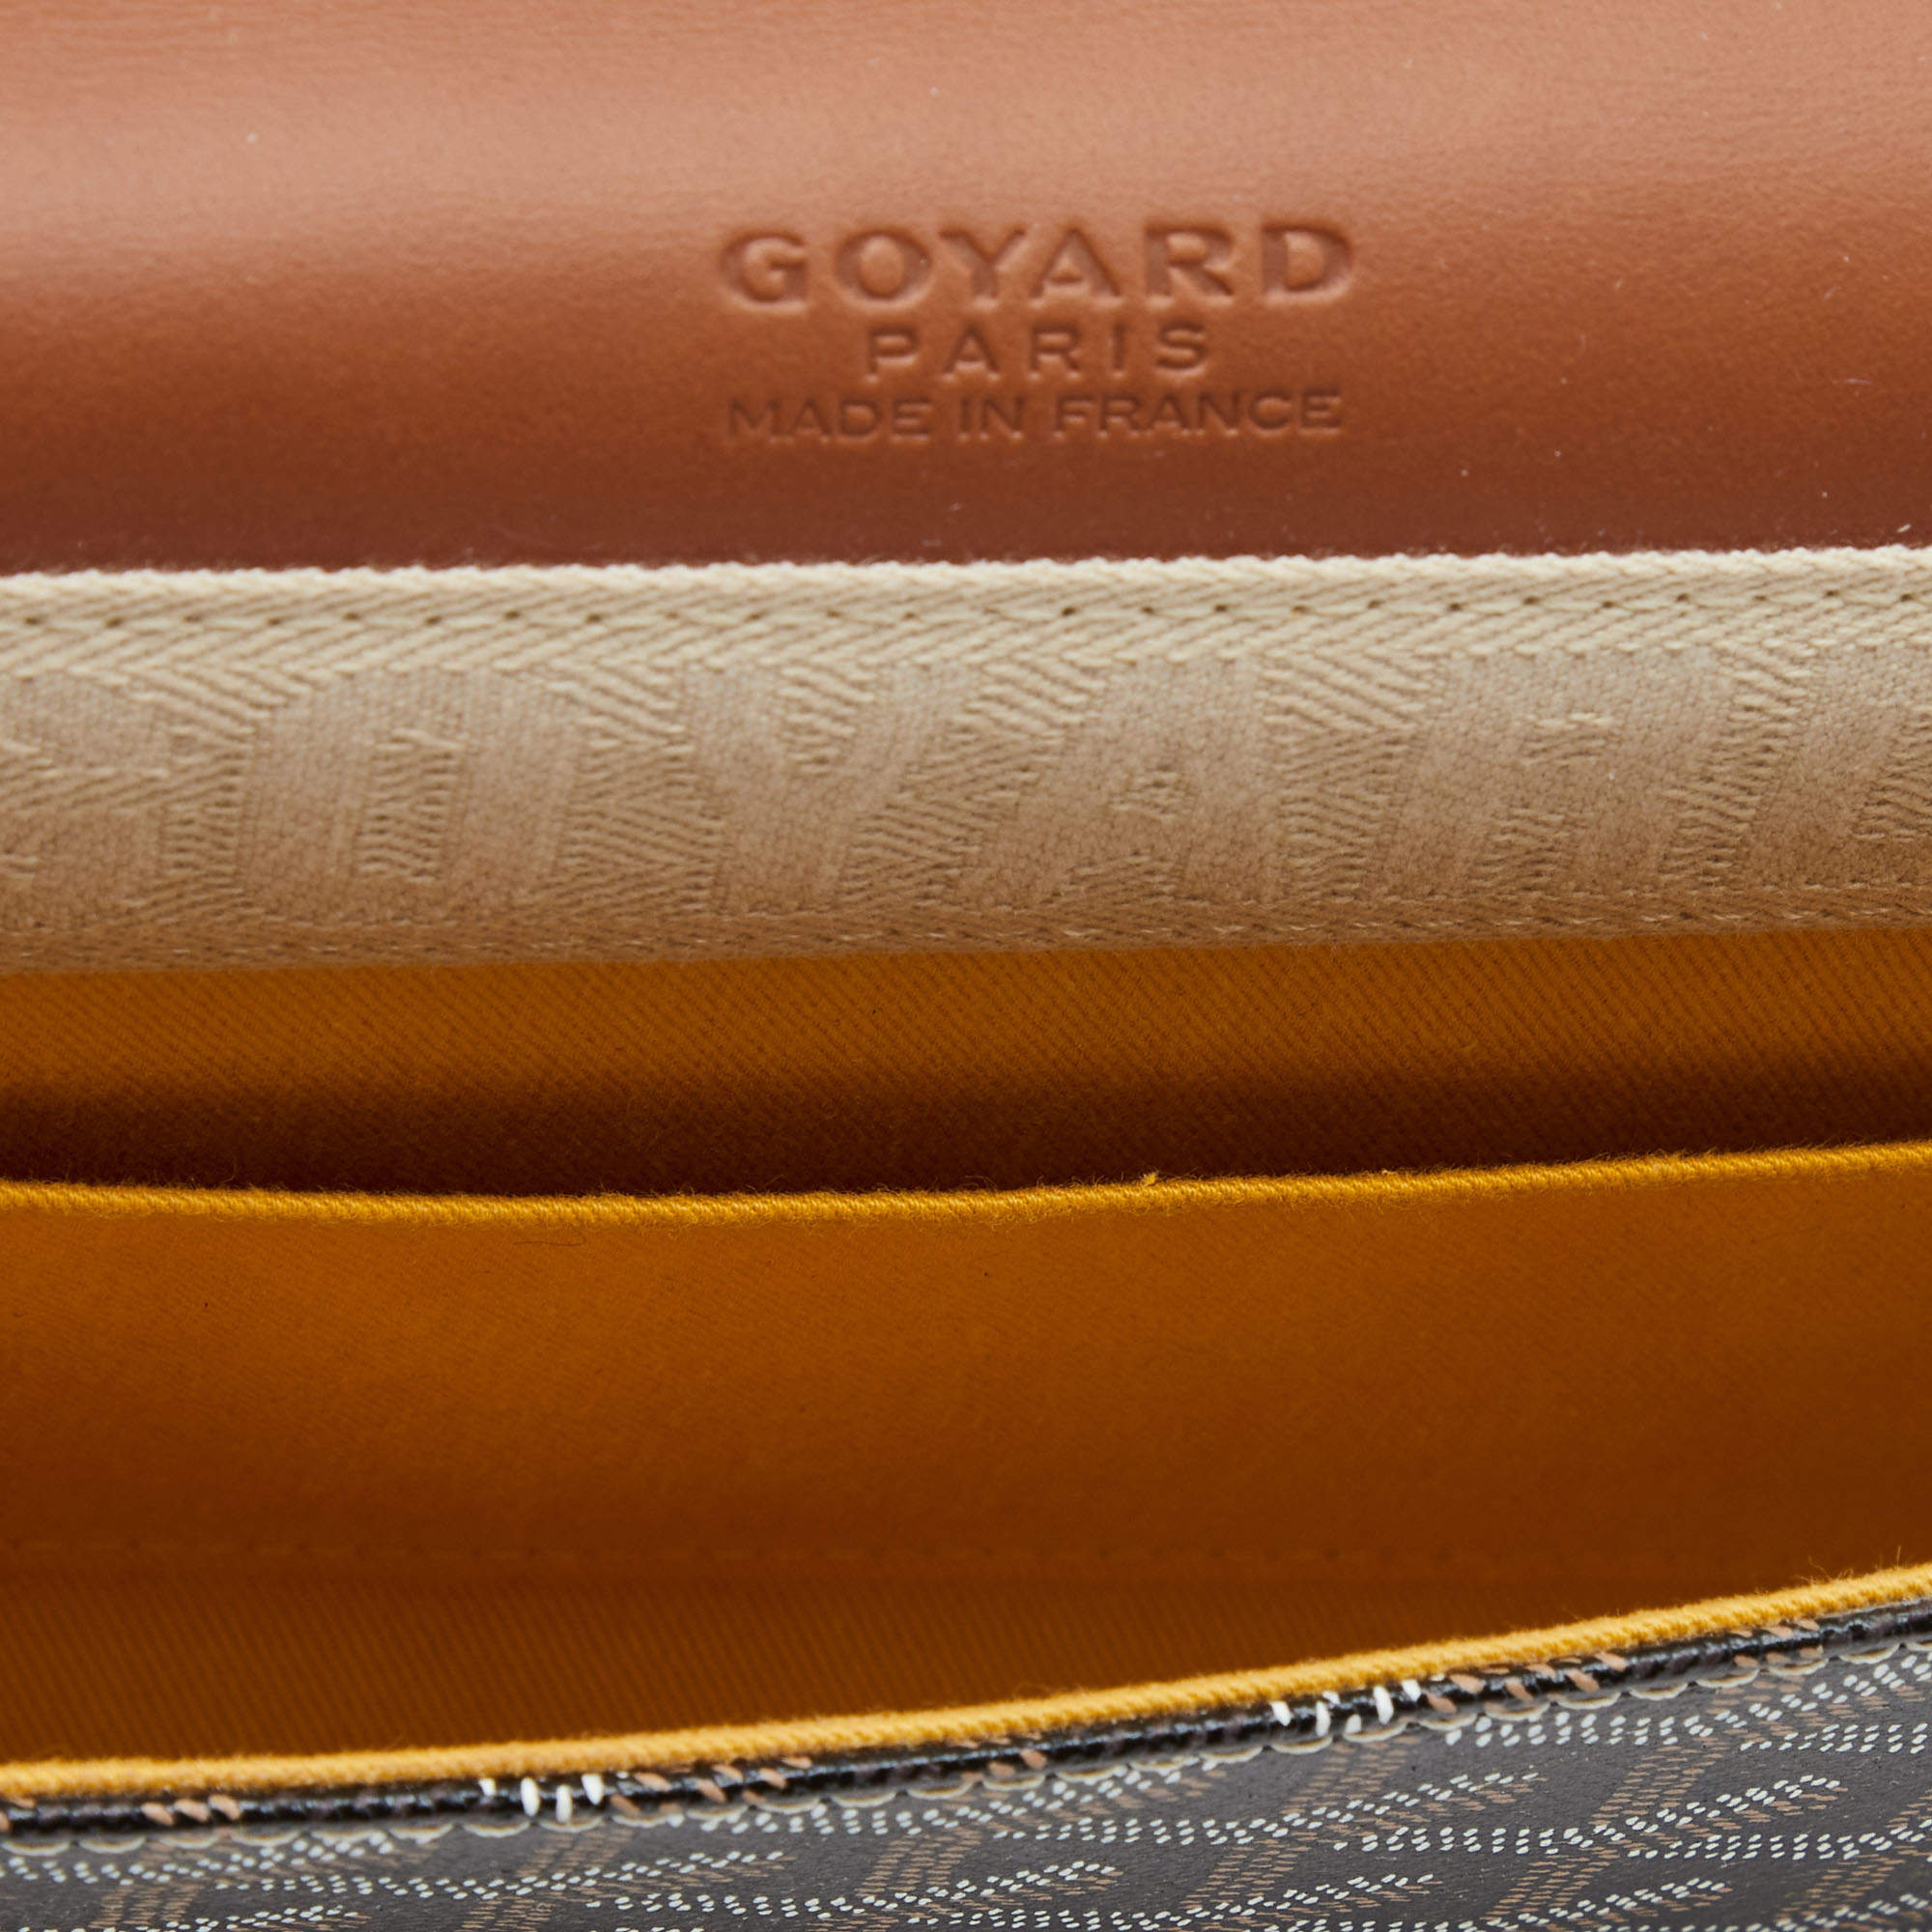 Goyard Monte Carlo Bois Clutch - Brown Clutches, Handbags - GOY20166